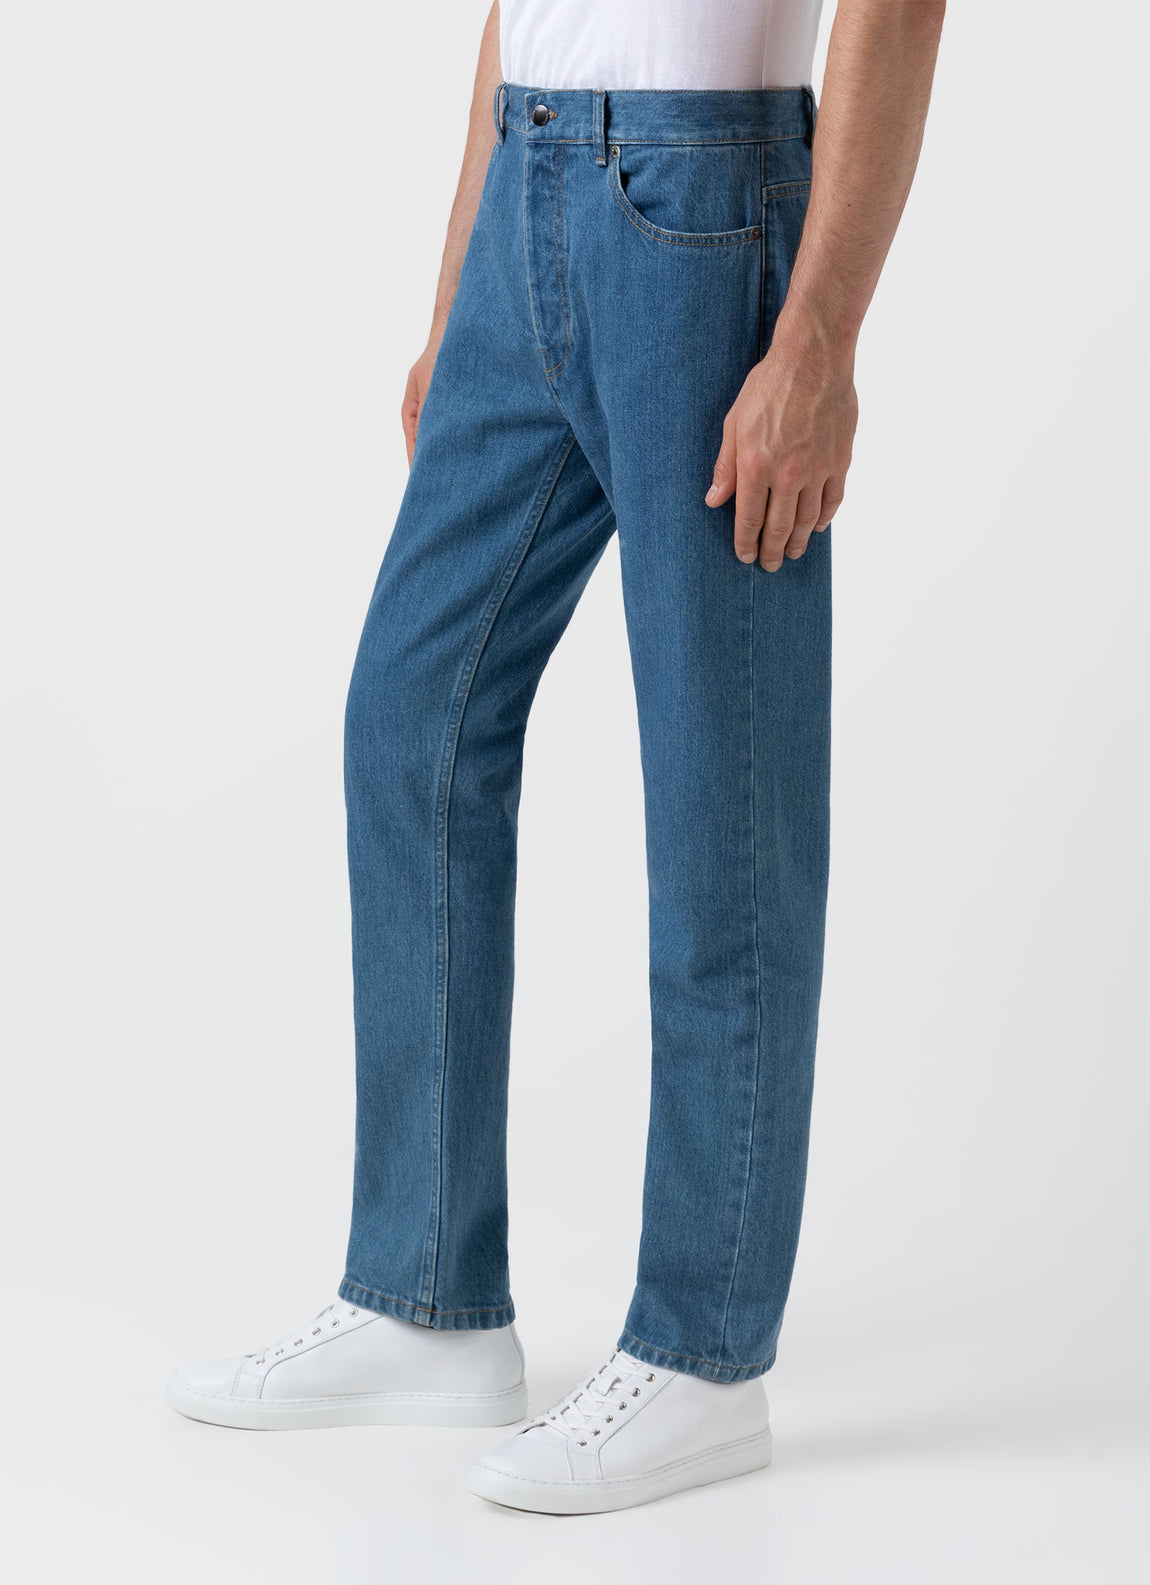 Men's Regular Fit Jeans in Mid Wash Denim